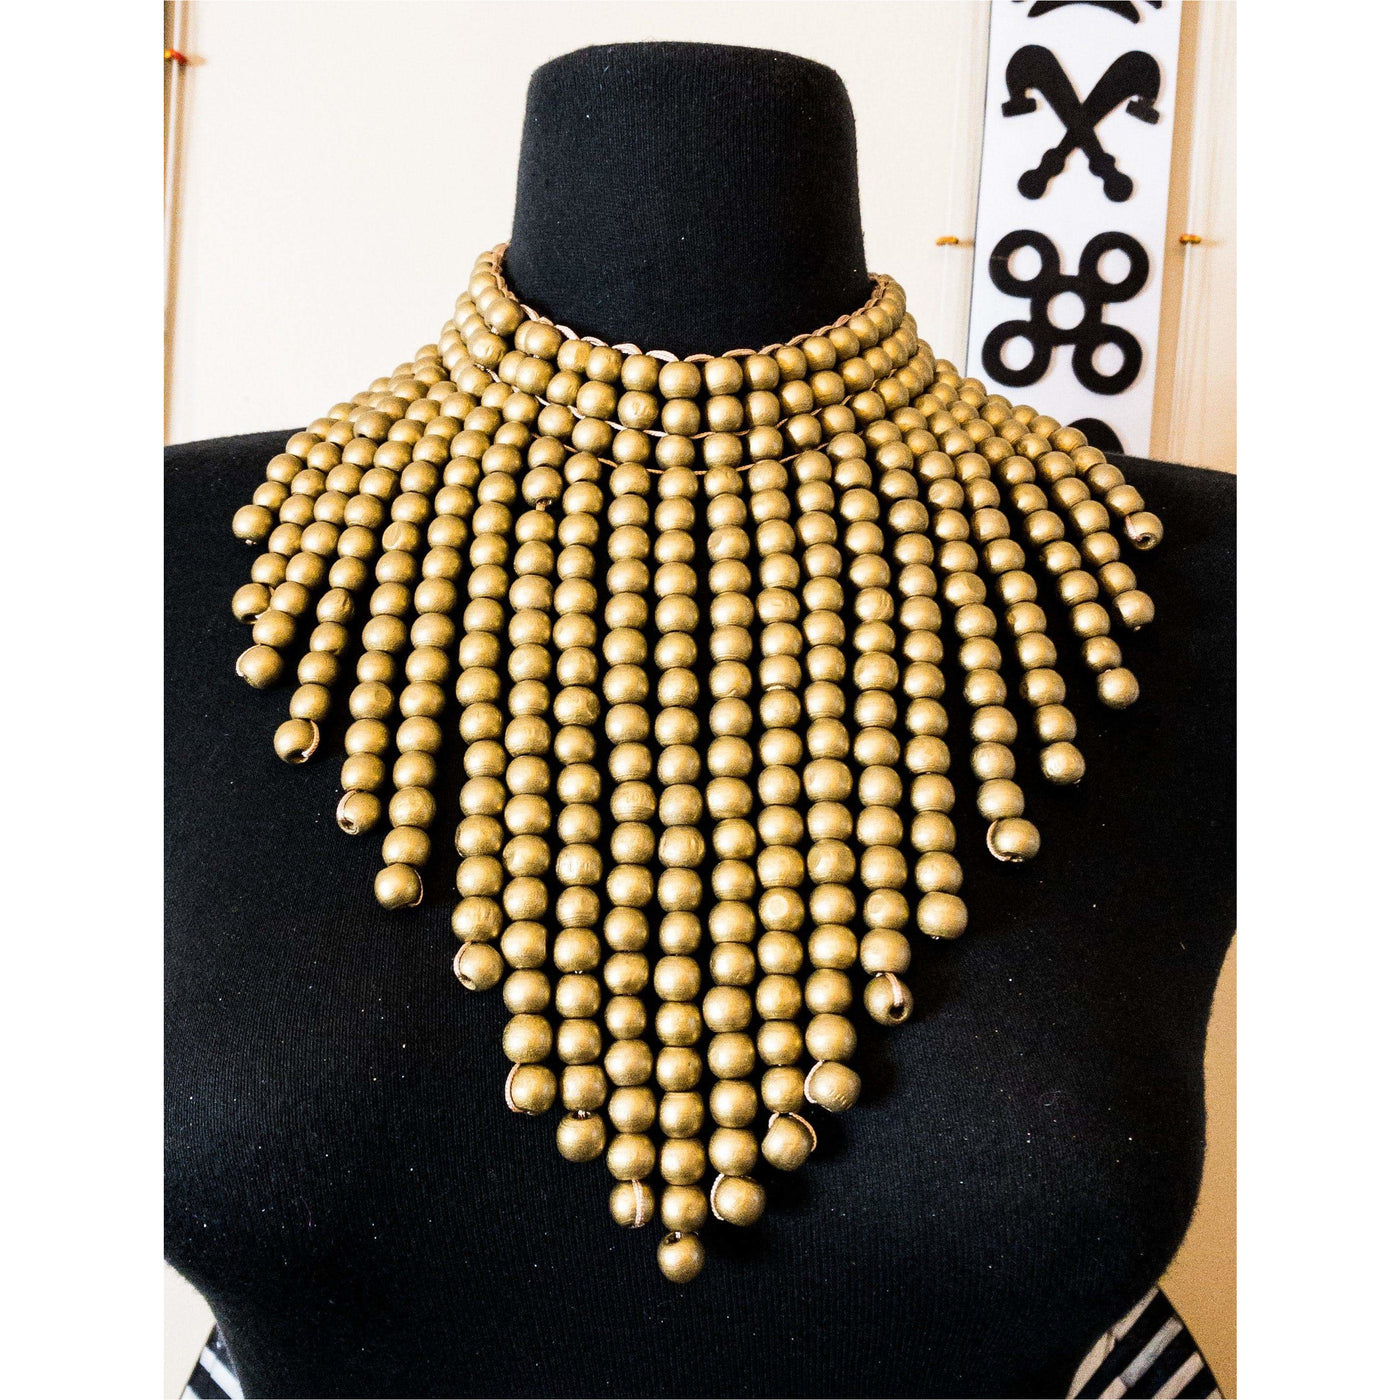 Naka Wooden beads necklace - Trufacebygrace